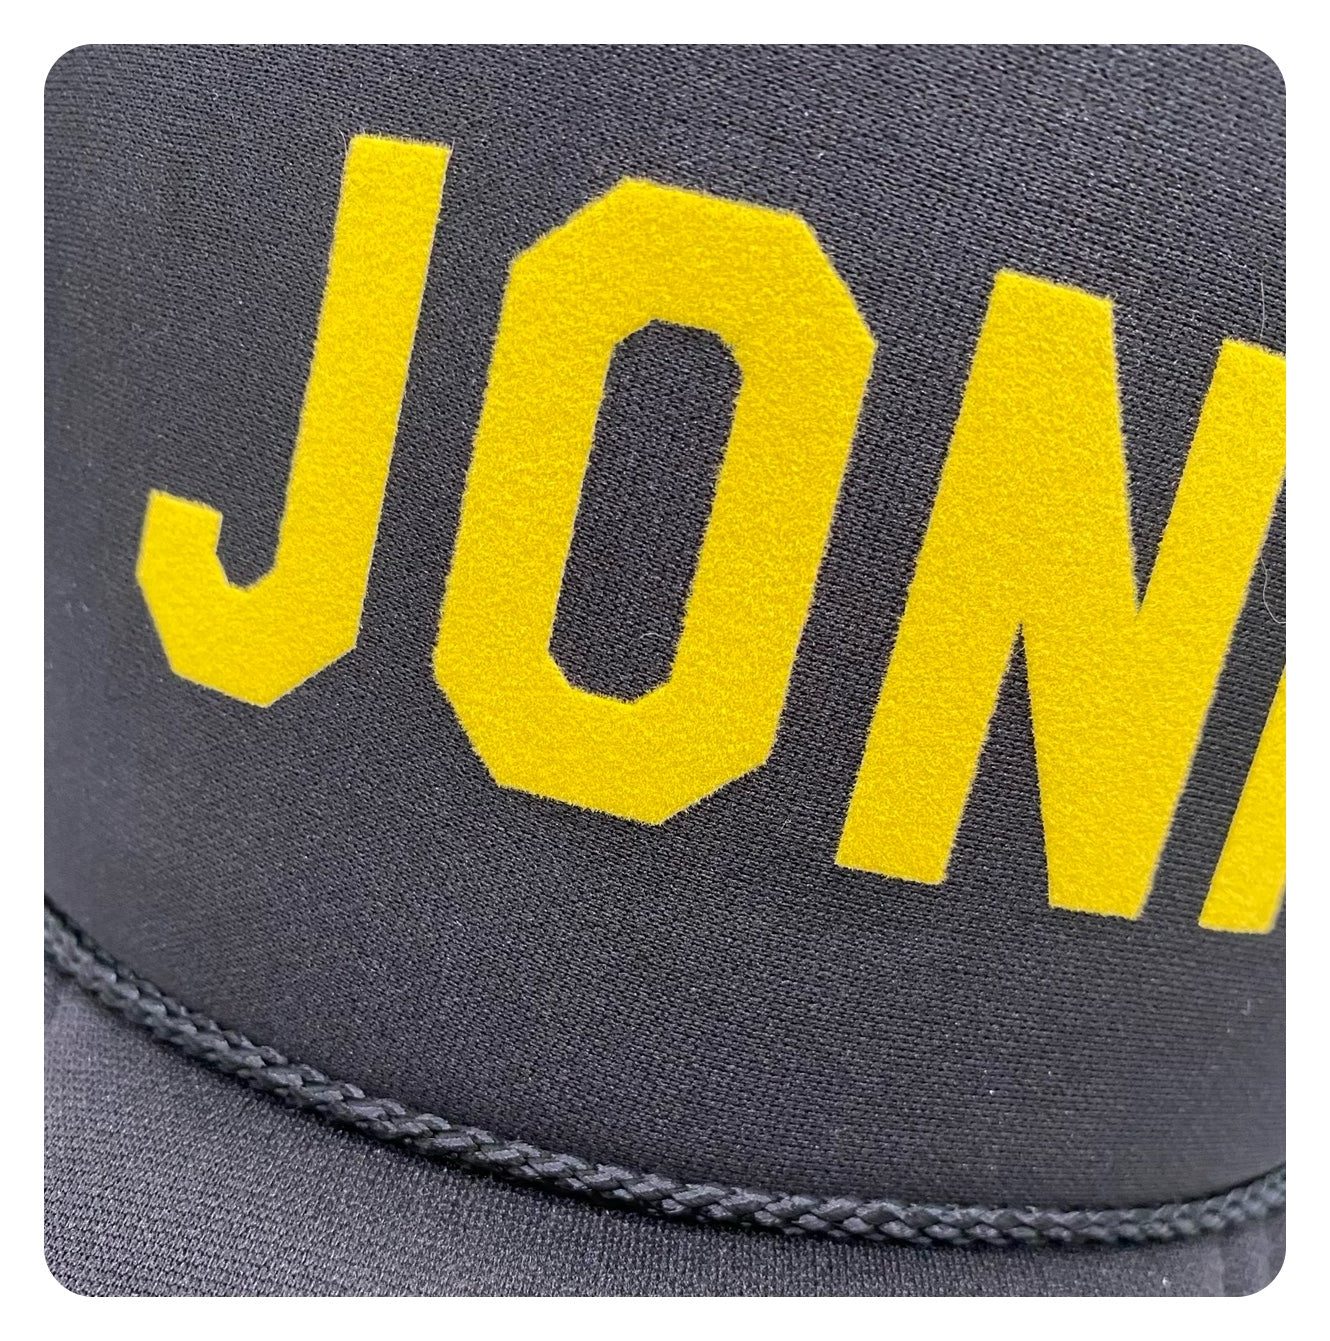 Joni Mitchell Tribute Foam Trucker Hat